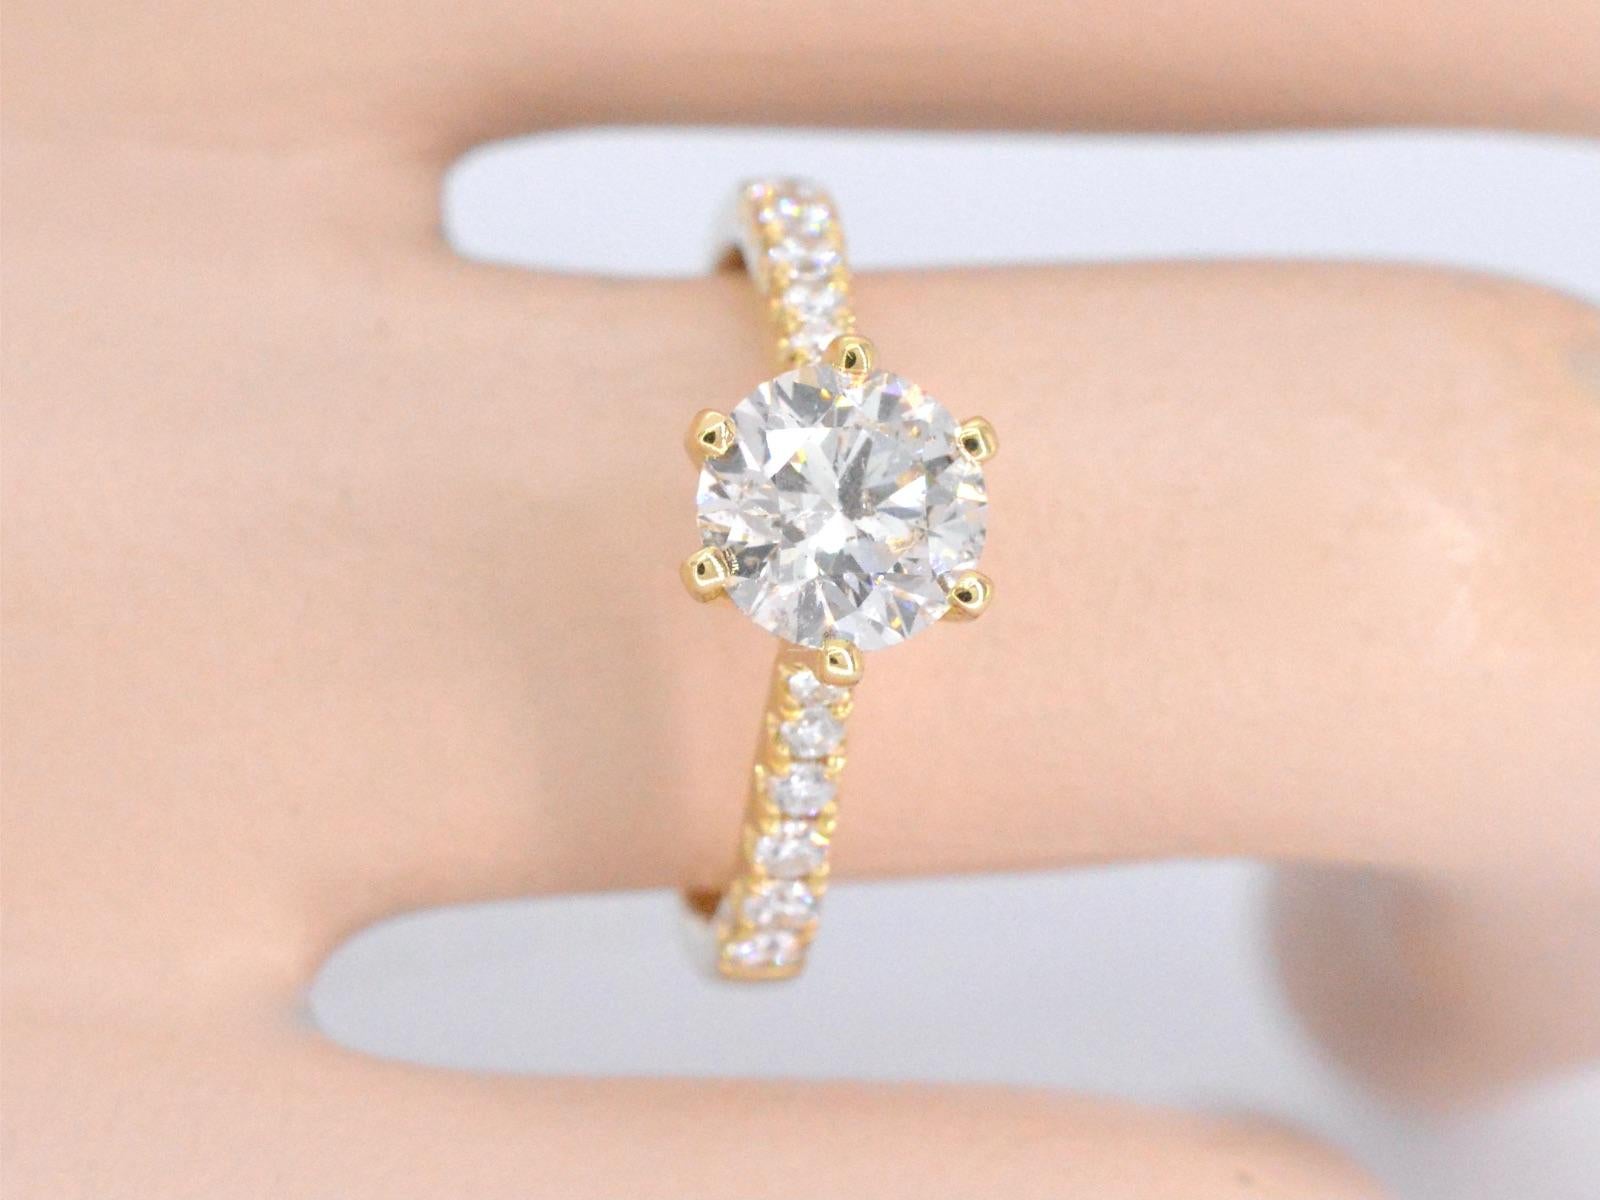 Wir präsentieren einen exquisiten Ring mit einem Primärdiamanten von 1,25 Karat. Dieser Diamant im Brillantschliff hat eine ausgeprägte M-Farbe und einen Reinheitsgrad von SI und bietet ein helles und auffälliges Erscheinungsbild. Der Ring enthält